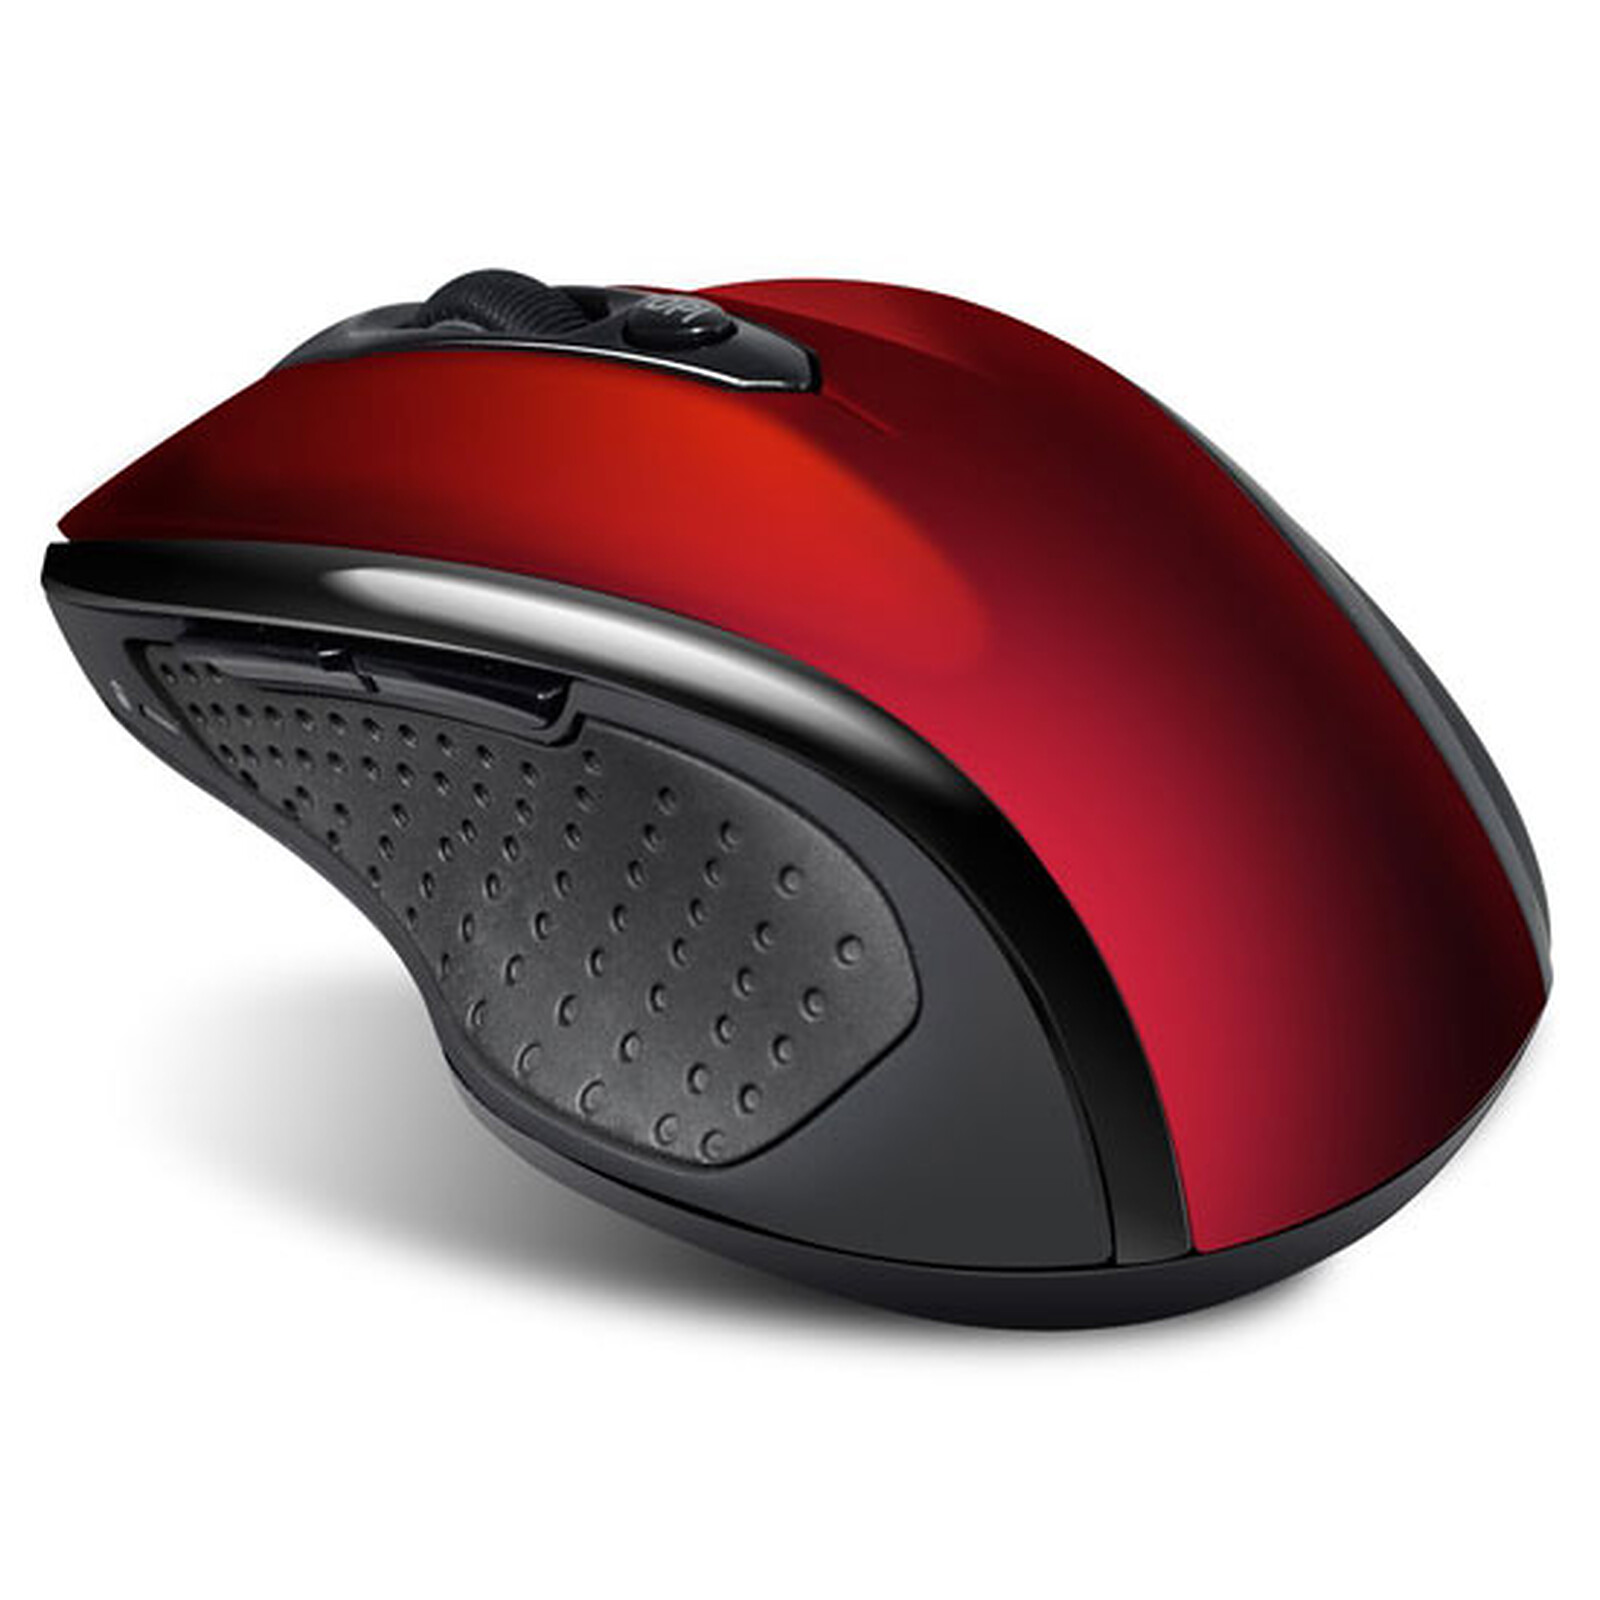 Advance Shape 6D Wireless Mouse (rouge) - Souris PC - Garantie 3 ans LDLC